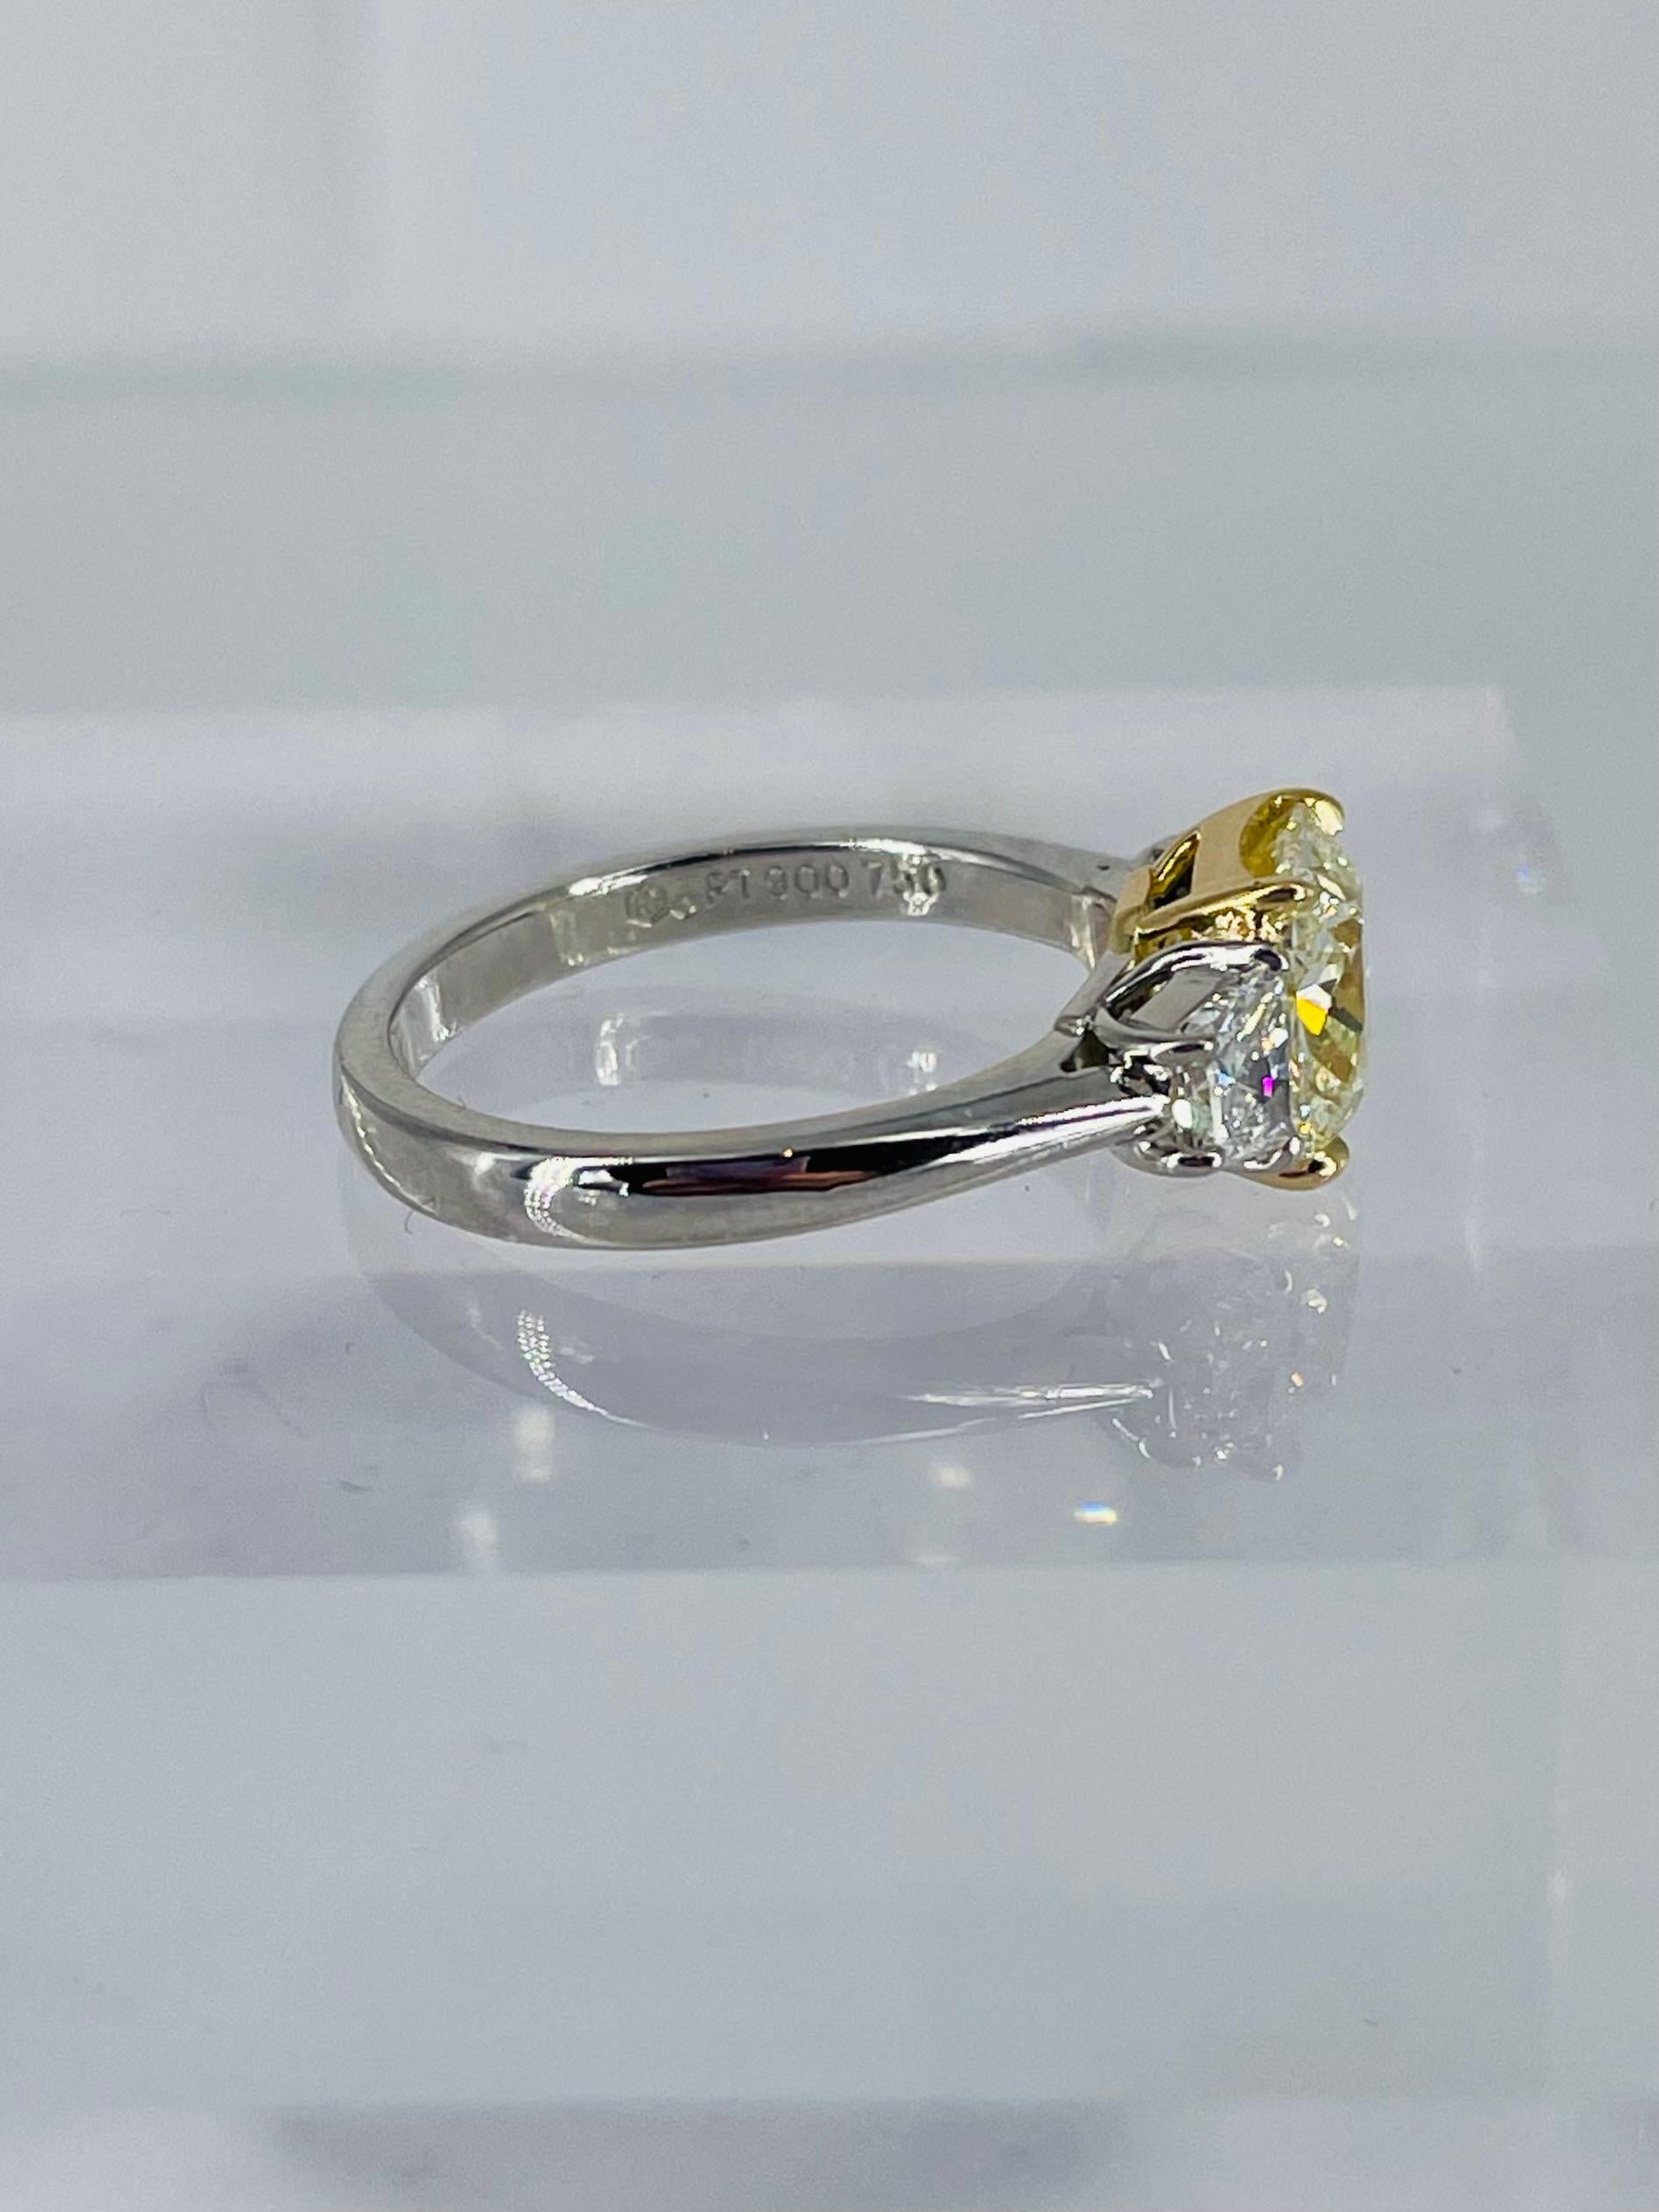 Dieser süße Ring ist die perfekte Kombination aus Glitzer und Farbe! Dieses 2,17-Karat-Kissen ist ein ganz besonderer Fund und wurde von GIA mit der Farbe S-T und der Reinheit VS1 zertifiziert. Der in 18-karätigem Gelbgold gefasste Diamant hat die